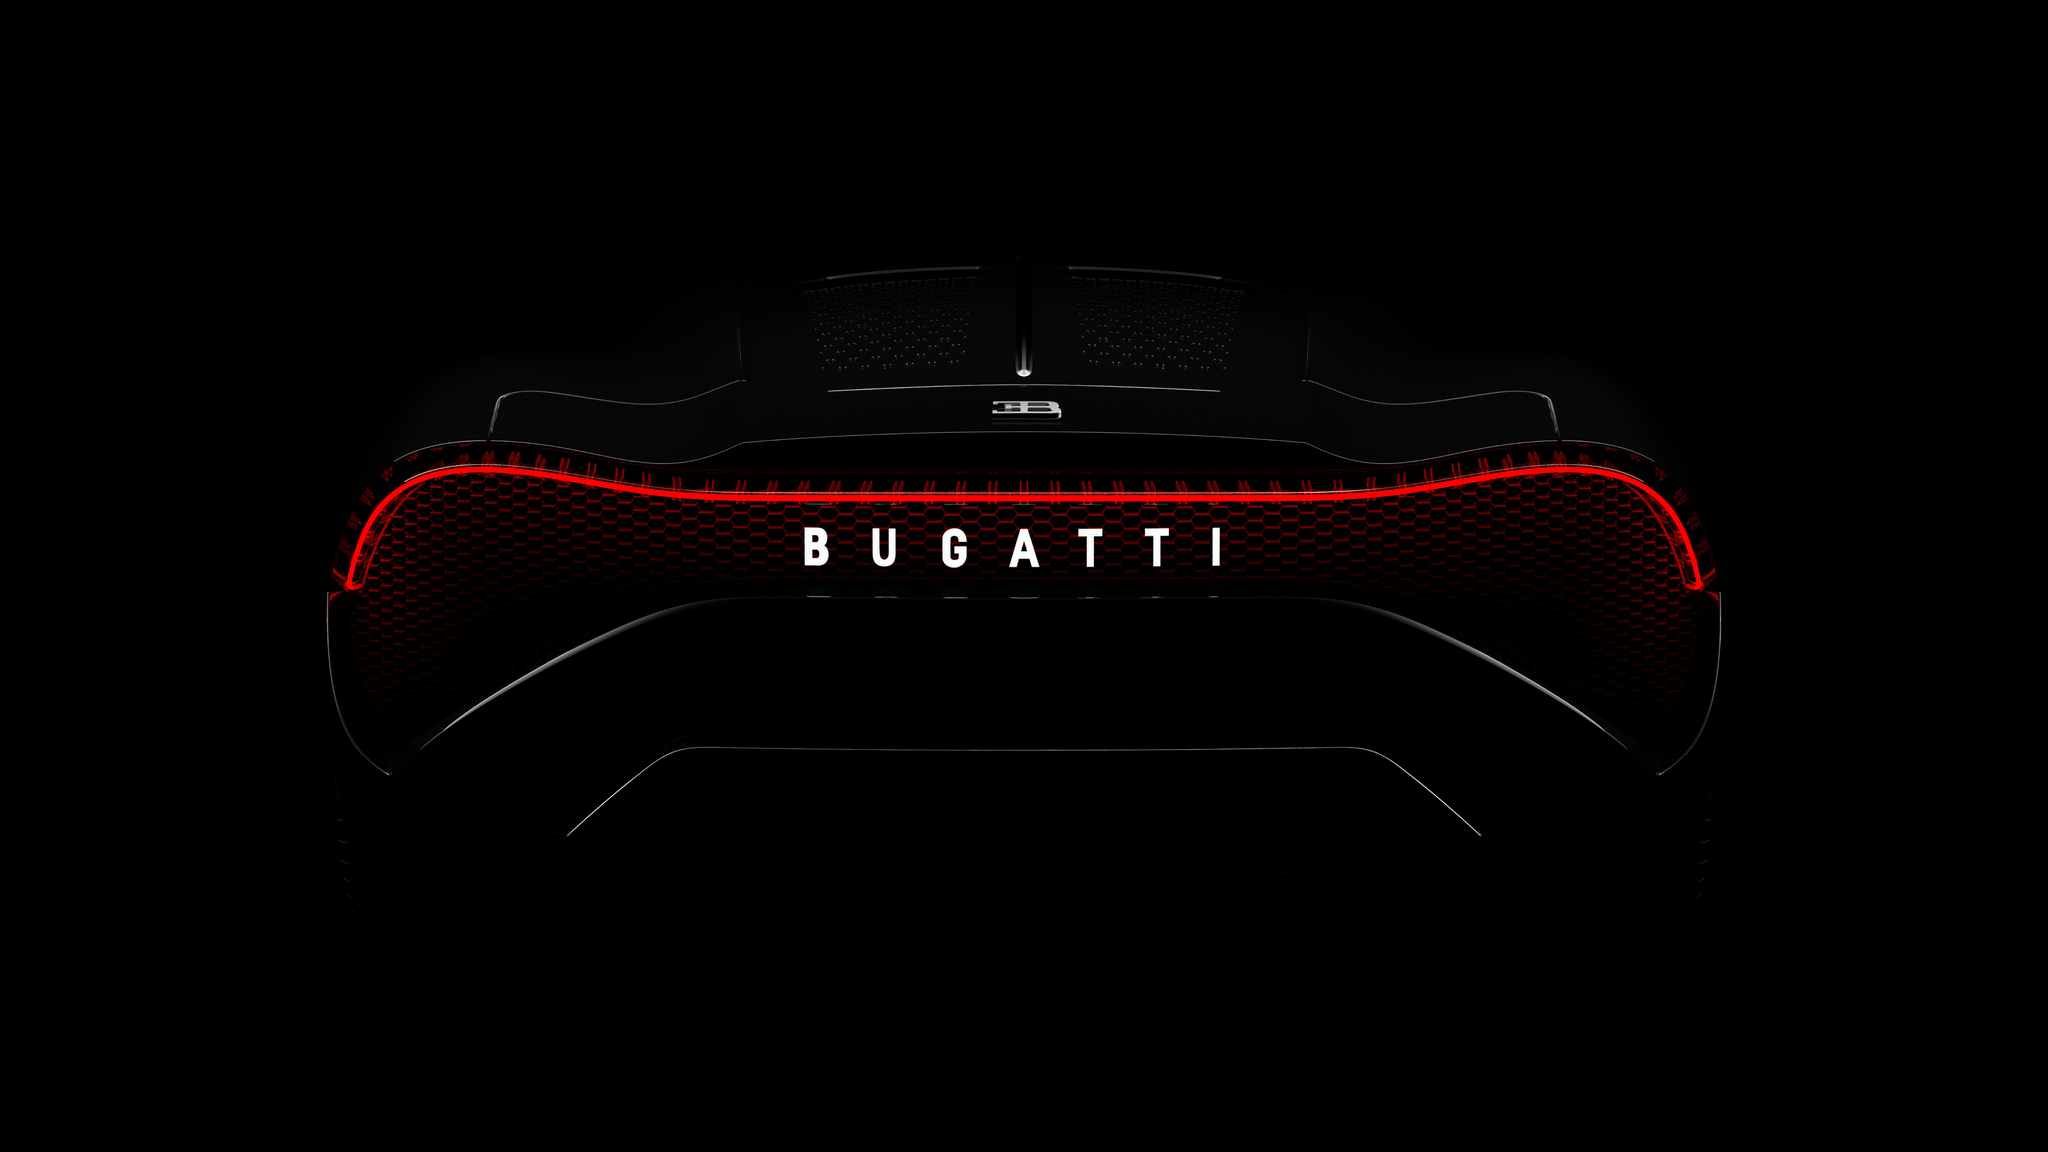 2048x1152 Bugatti La Voiture Noire 2019 Rear Lights